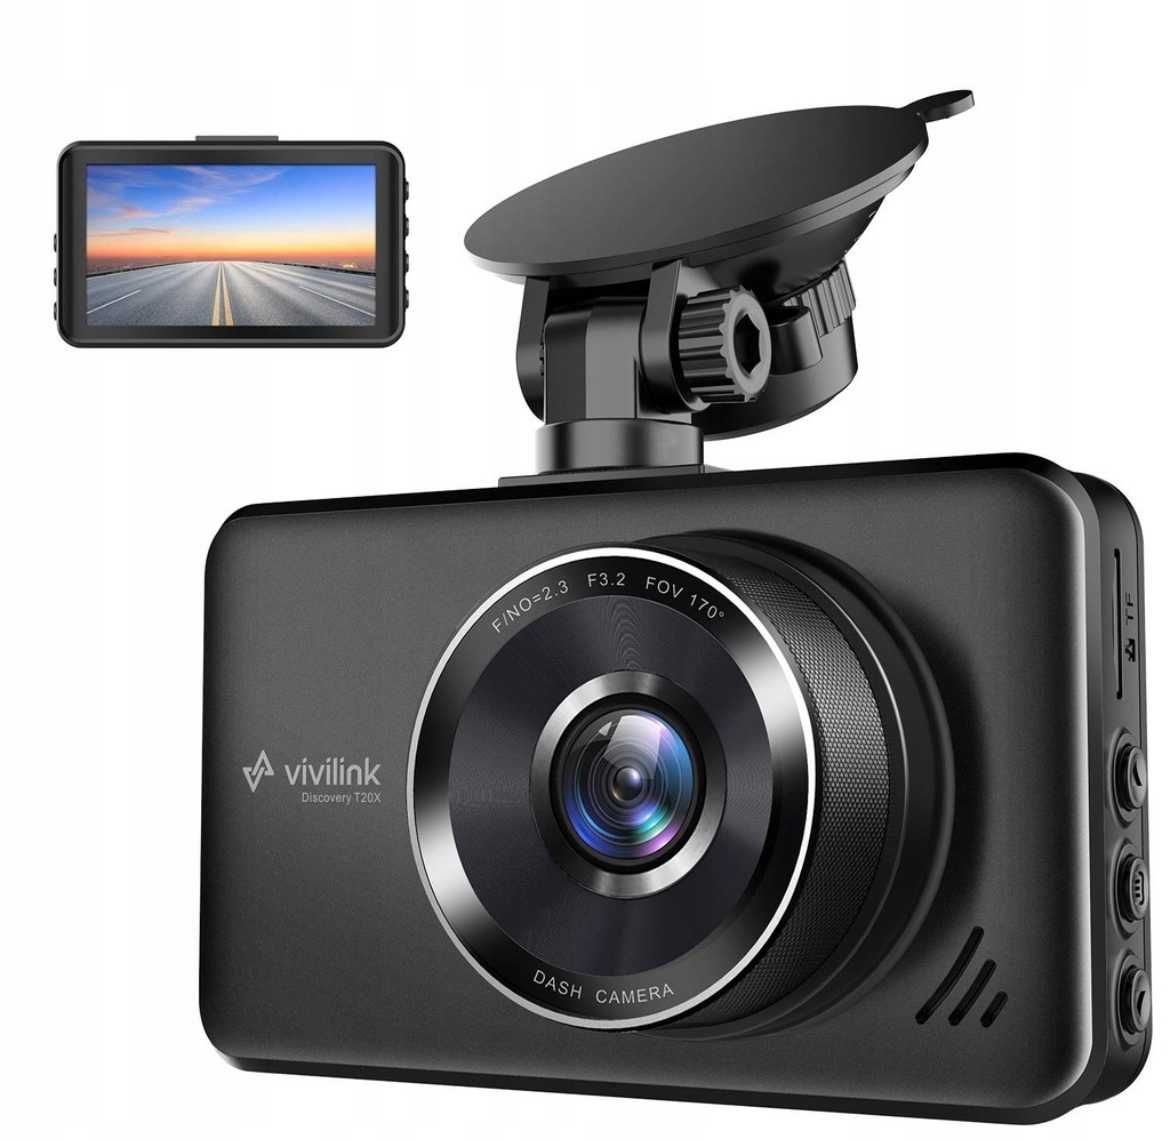 Kamera samochodowa ViviLink DISCOVERY T20X Dash Cam